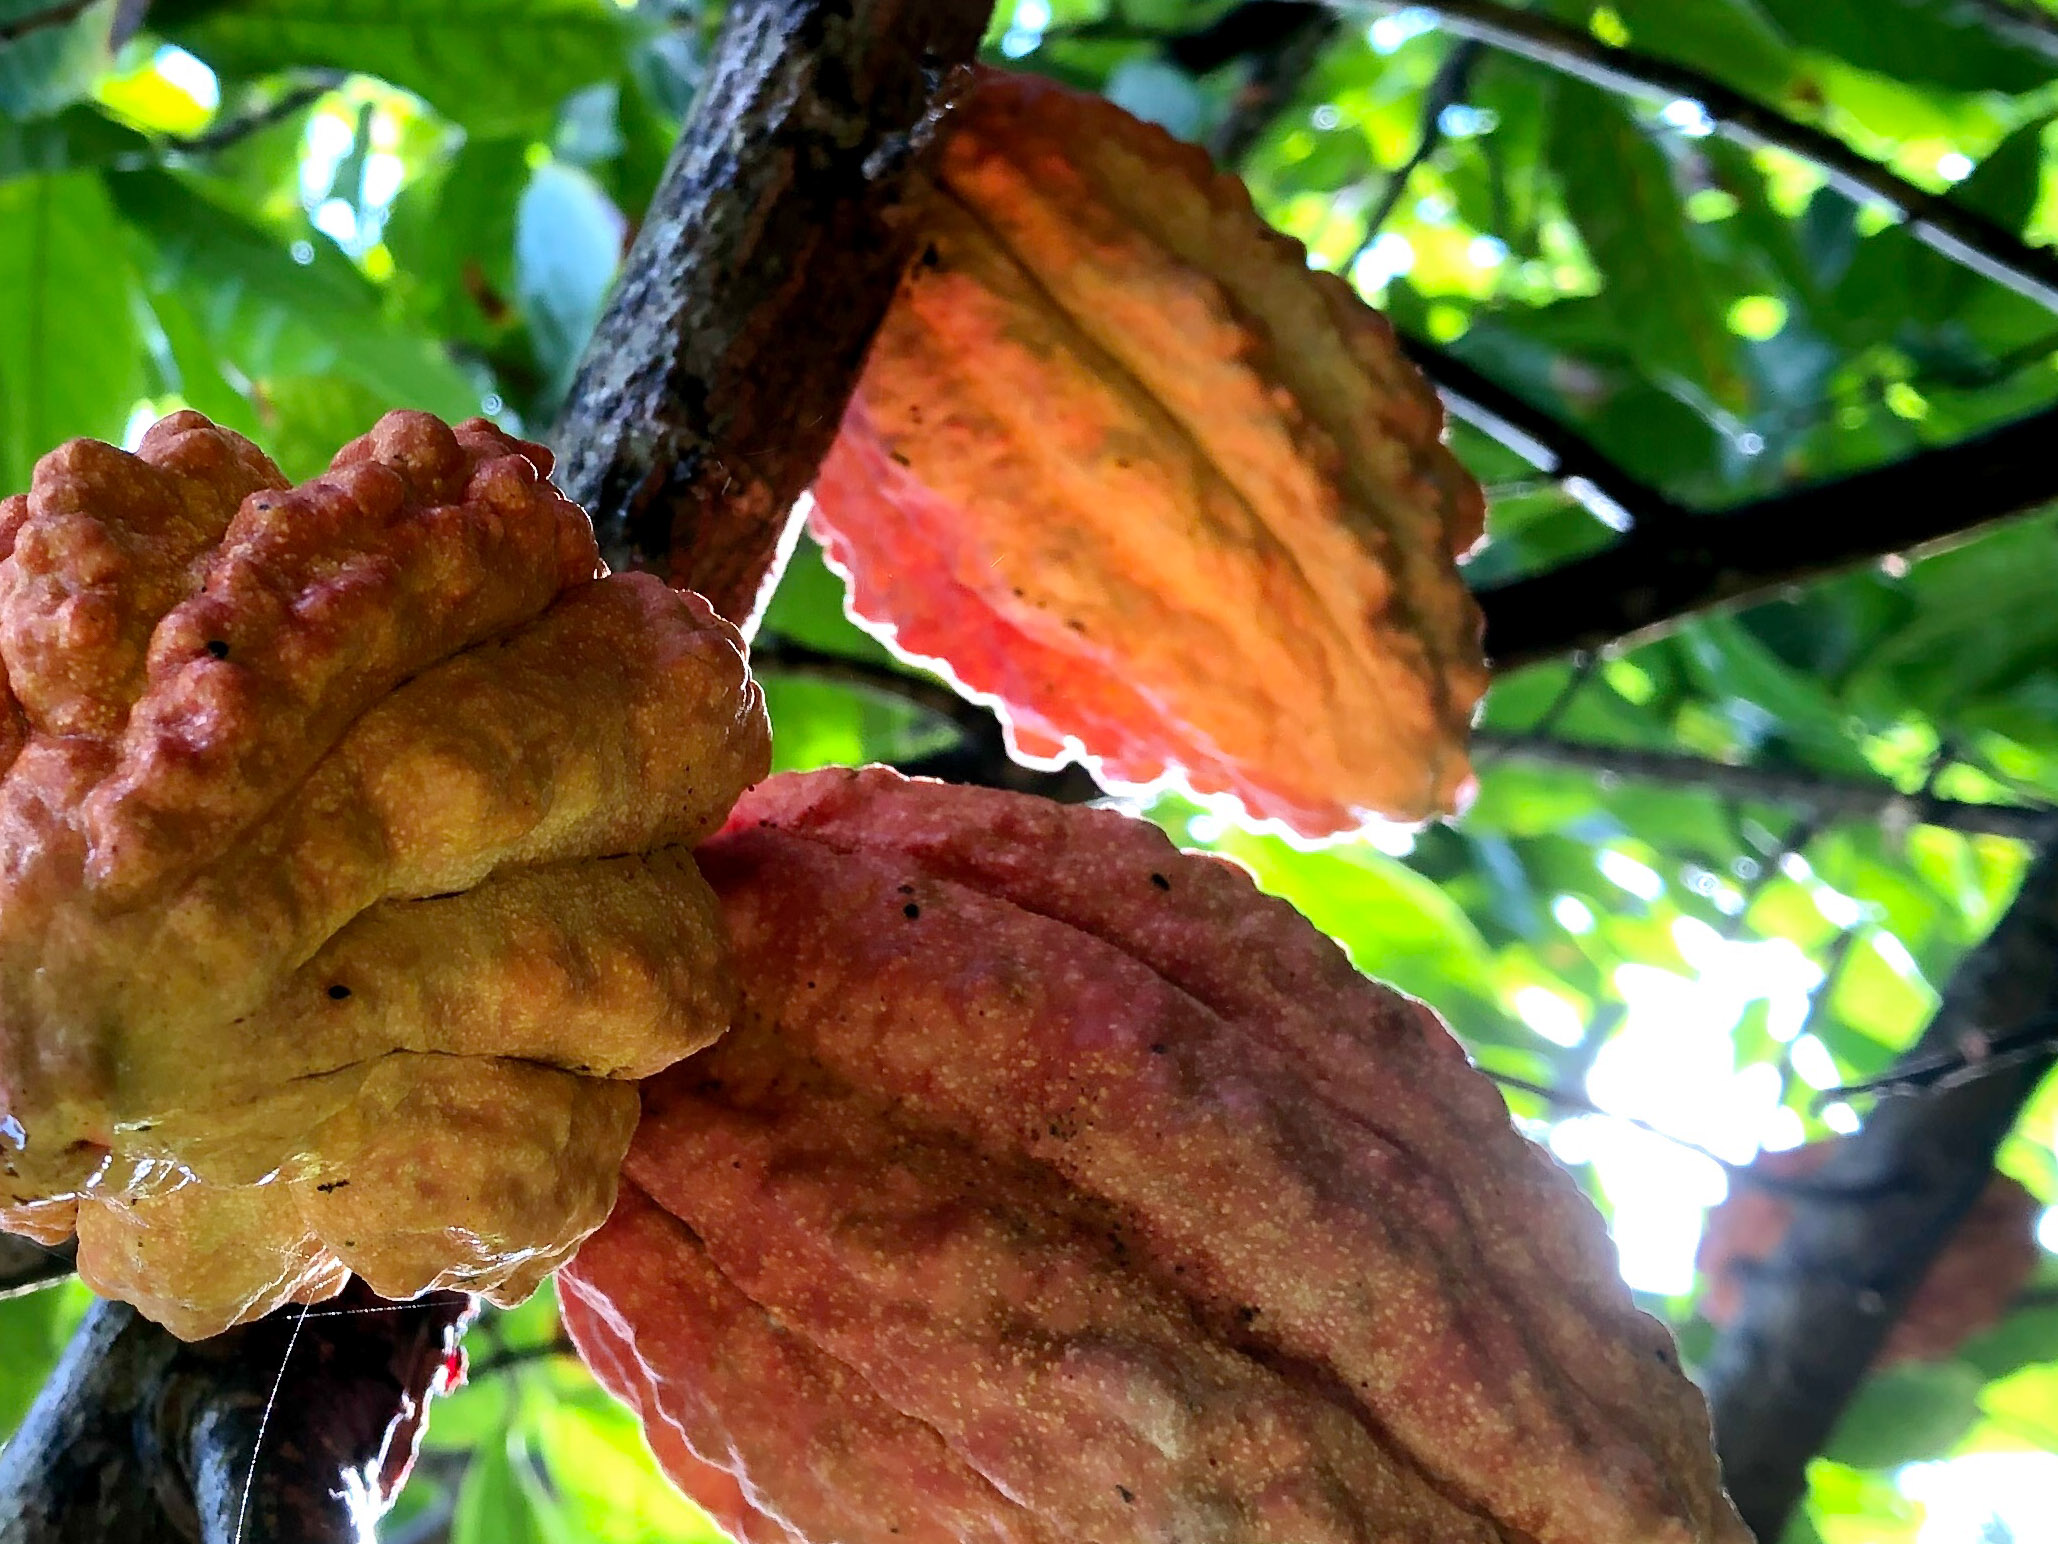 Cocoa grows in the garden